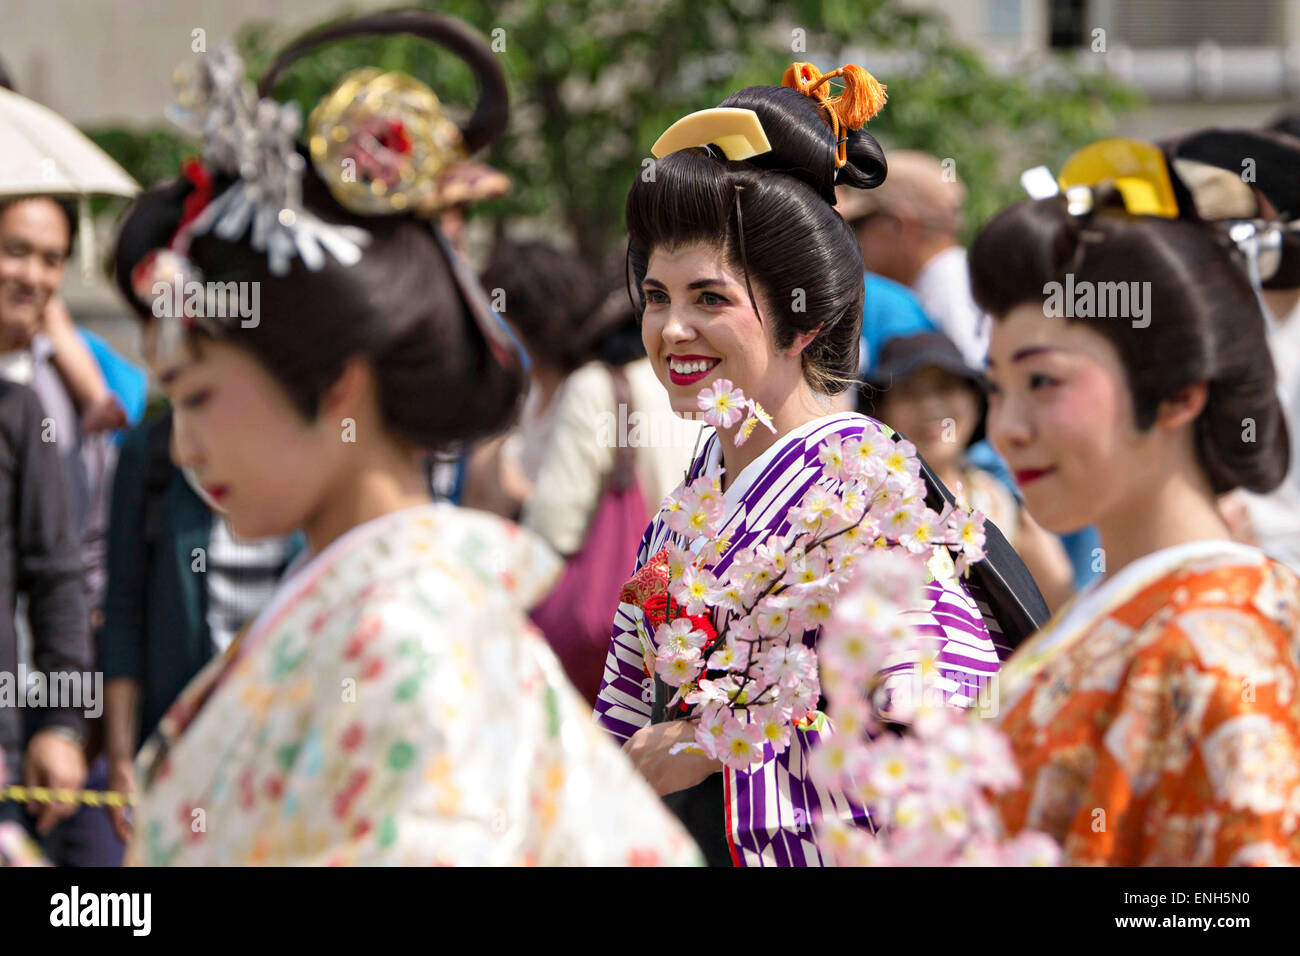 Las mujeres japonesas vestidas con trajes de época tradicional tomar parte en una procesión que recrea el retorno de los daimyo y su séquito desde la capital de Japón durante el Festival Anual de puente Kintai kyo Abril 29, 2015 en Iwakuni, Yamaguchi, Japón. Foto de stock